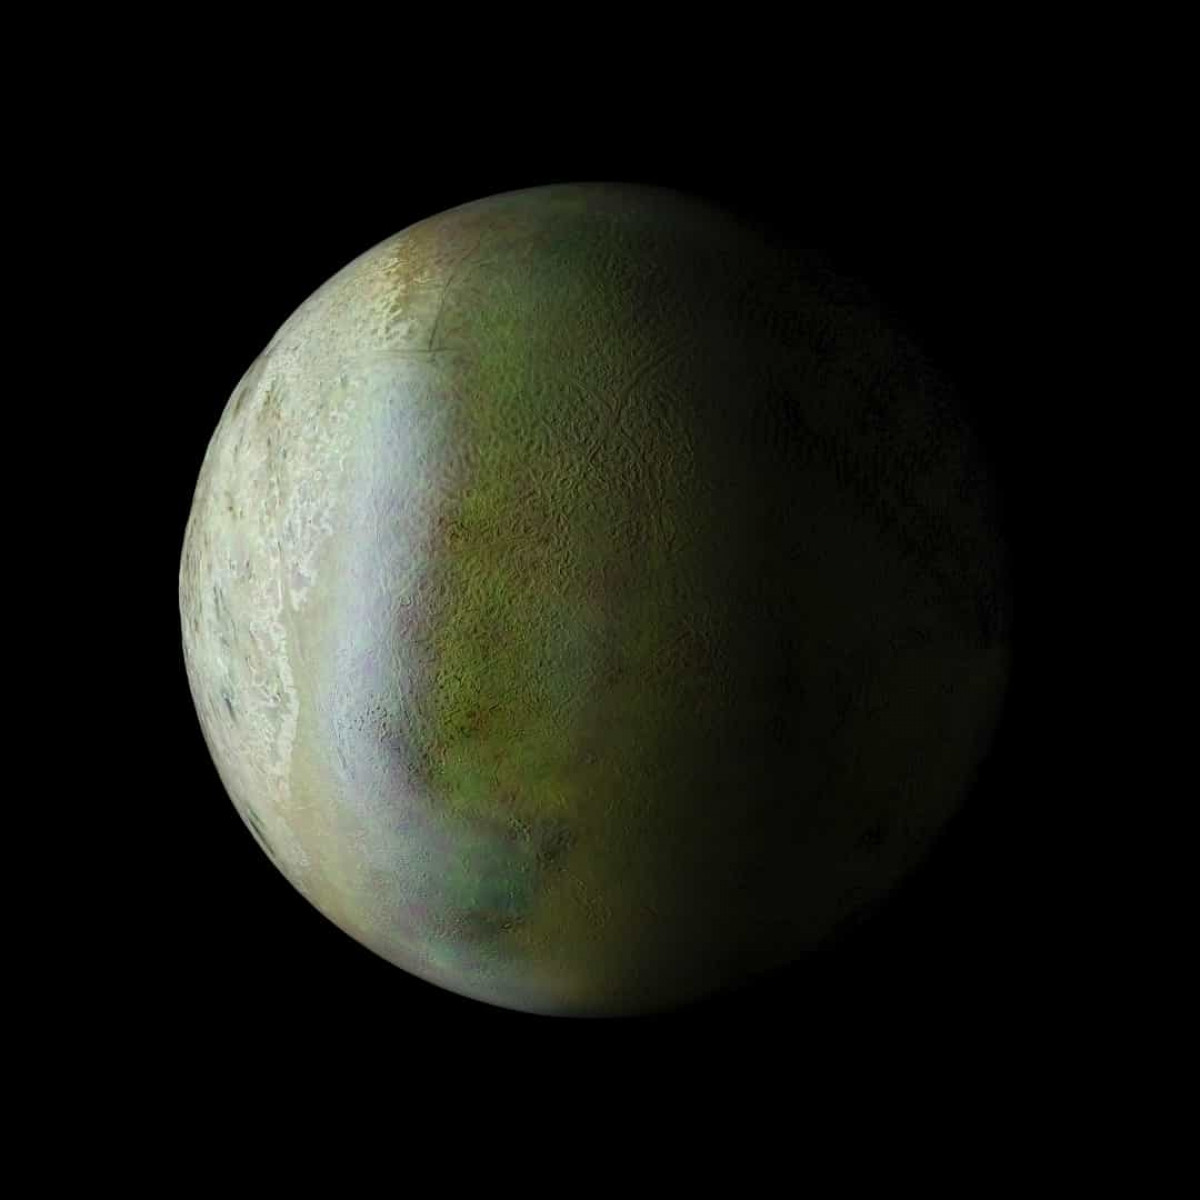 Nơi lạnh nhất trong Hệ Mặt trời là Triton, vệ tinh của sao Hải vương. Nhiệt độ trung bình của nó là âm 240 độ C, một nơi mà con người hoàn toàn không thể sinh sống được.